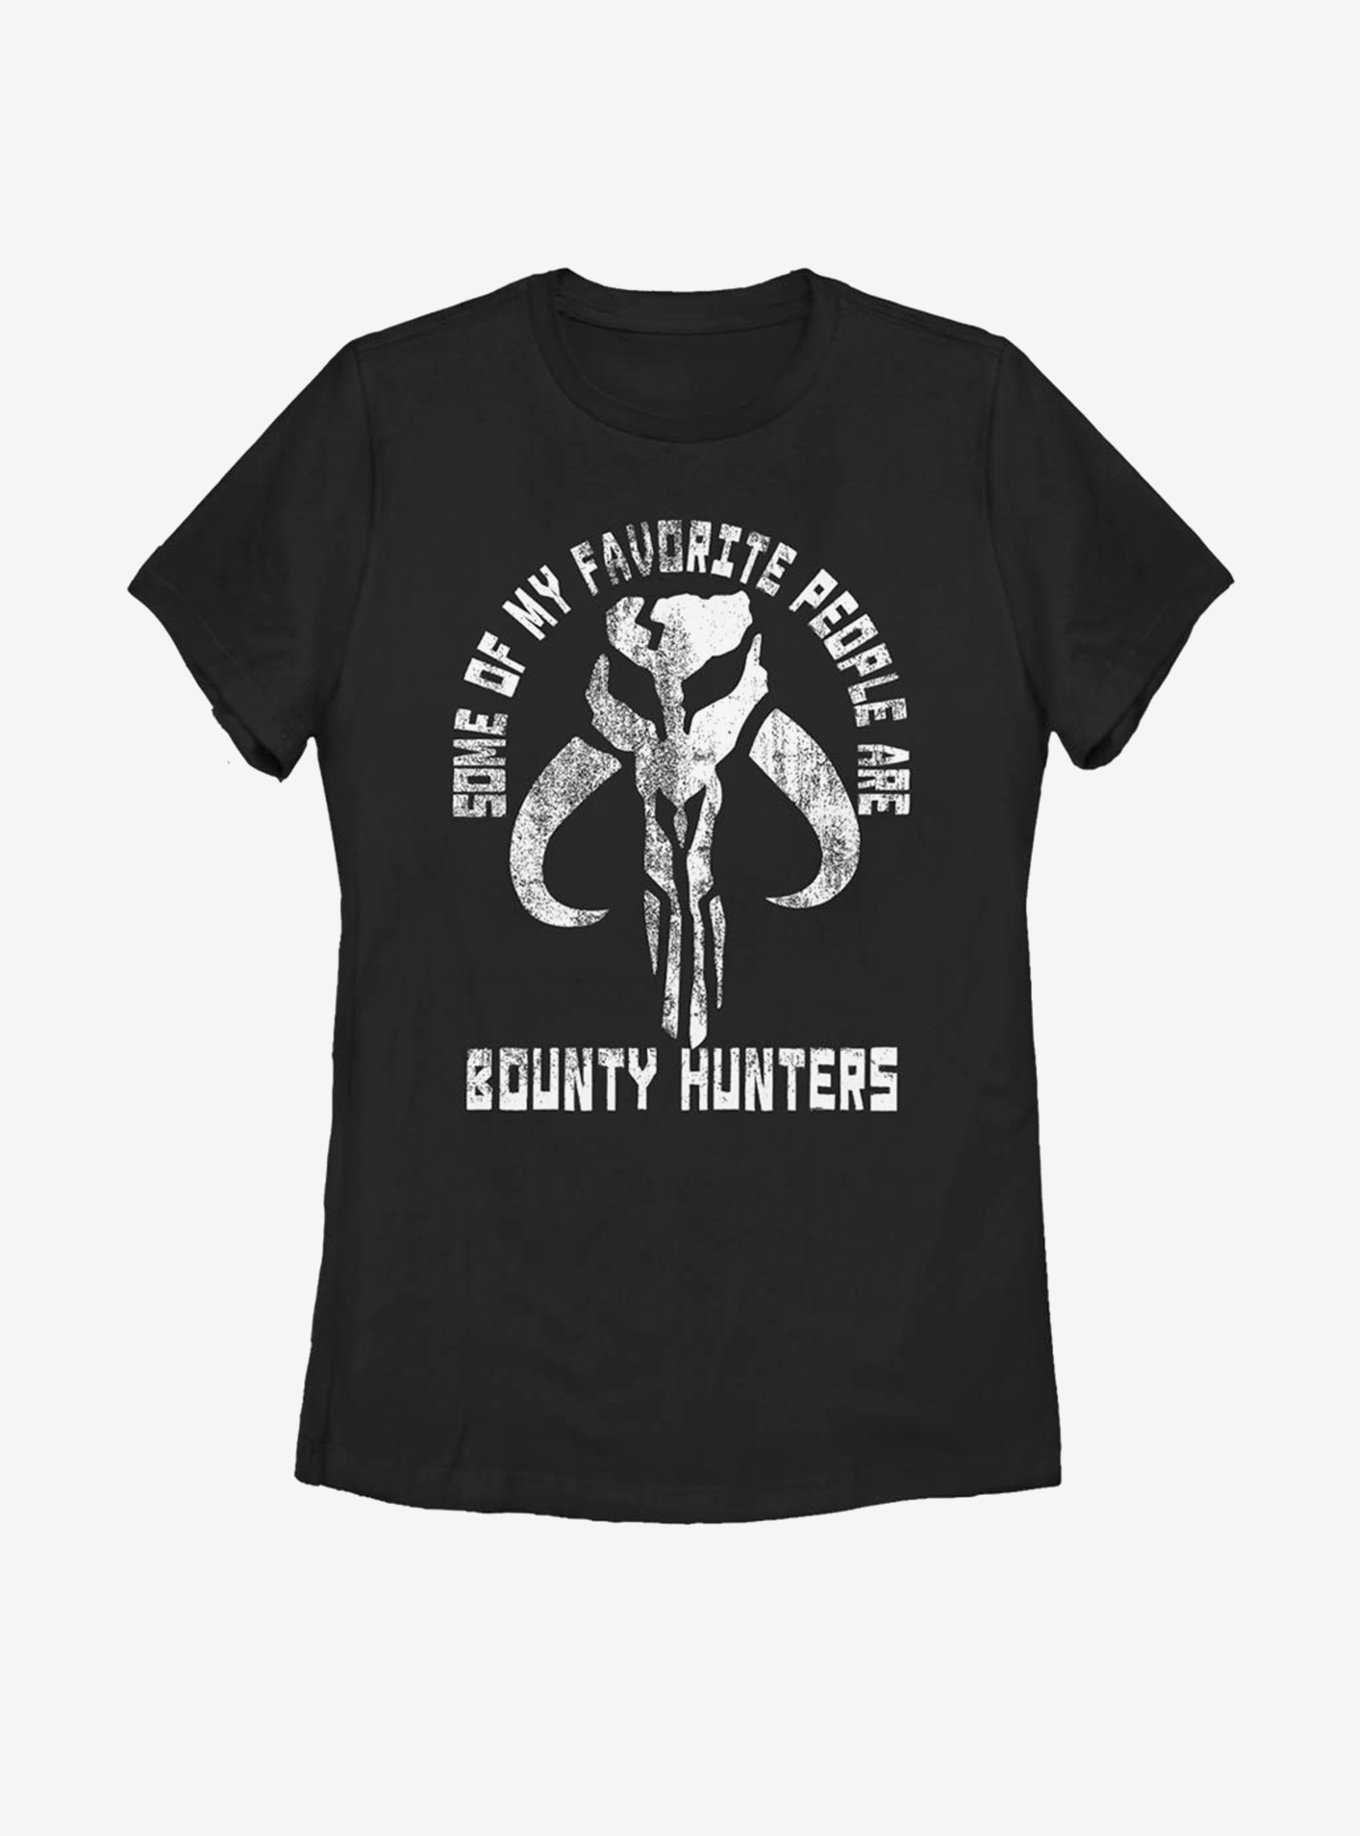 Star Wars The Mandalorian Favorite People Bounty Hunters Womens T-Shirt, , hi-res